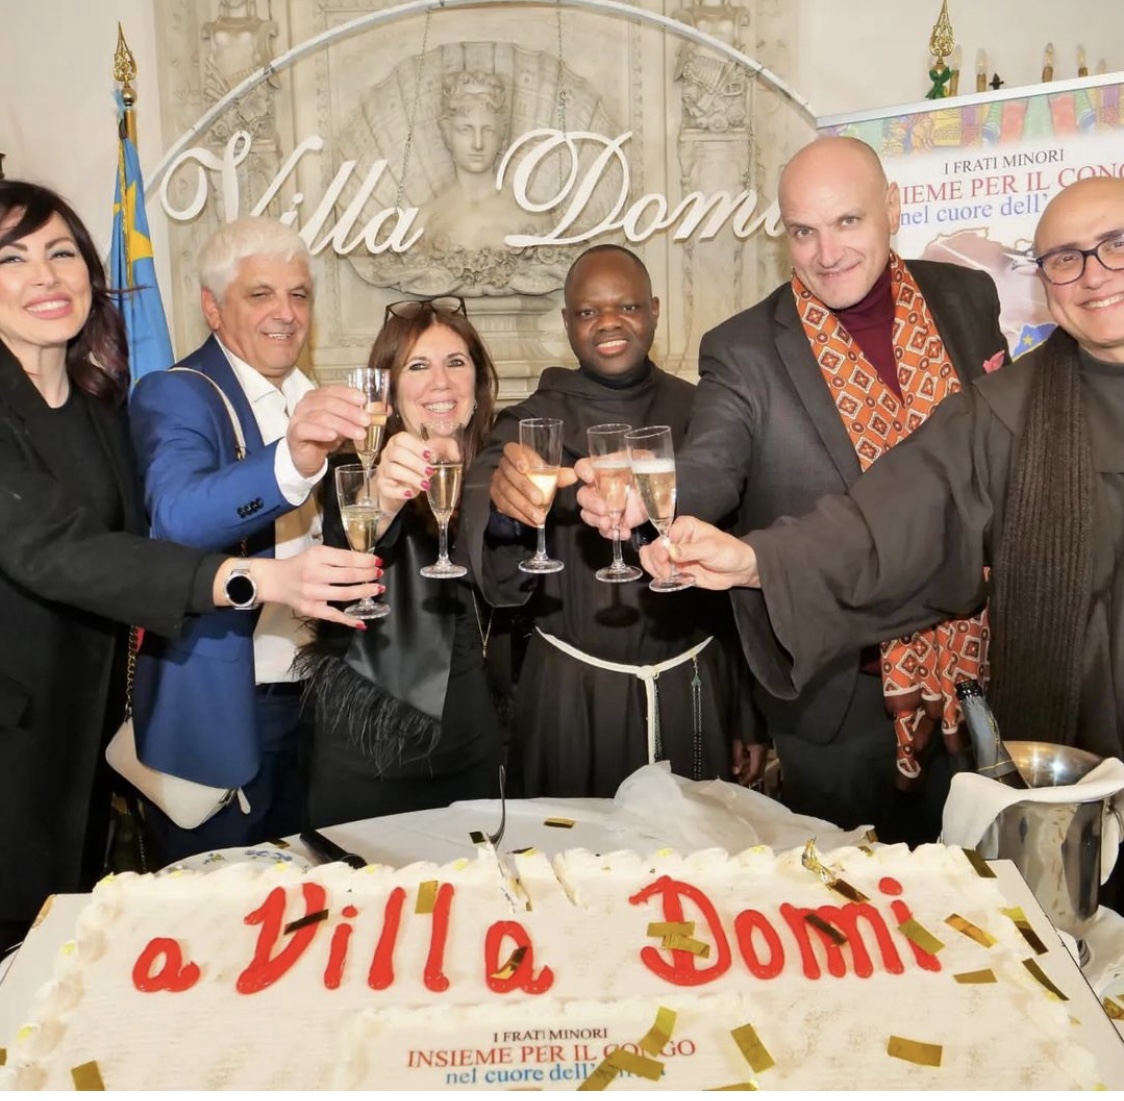 INSIEME PER IL CONGO a Villa Domi a Napoli  VIA ALL’ADOZIONE SCOLASTICA